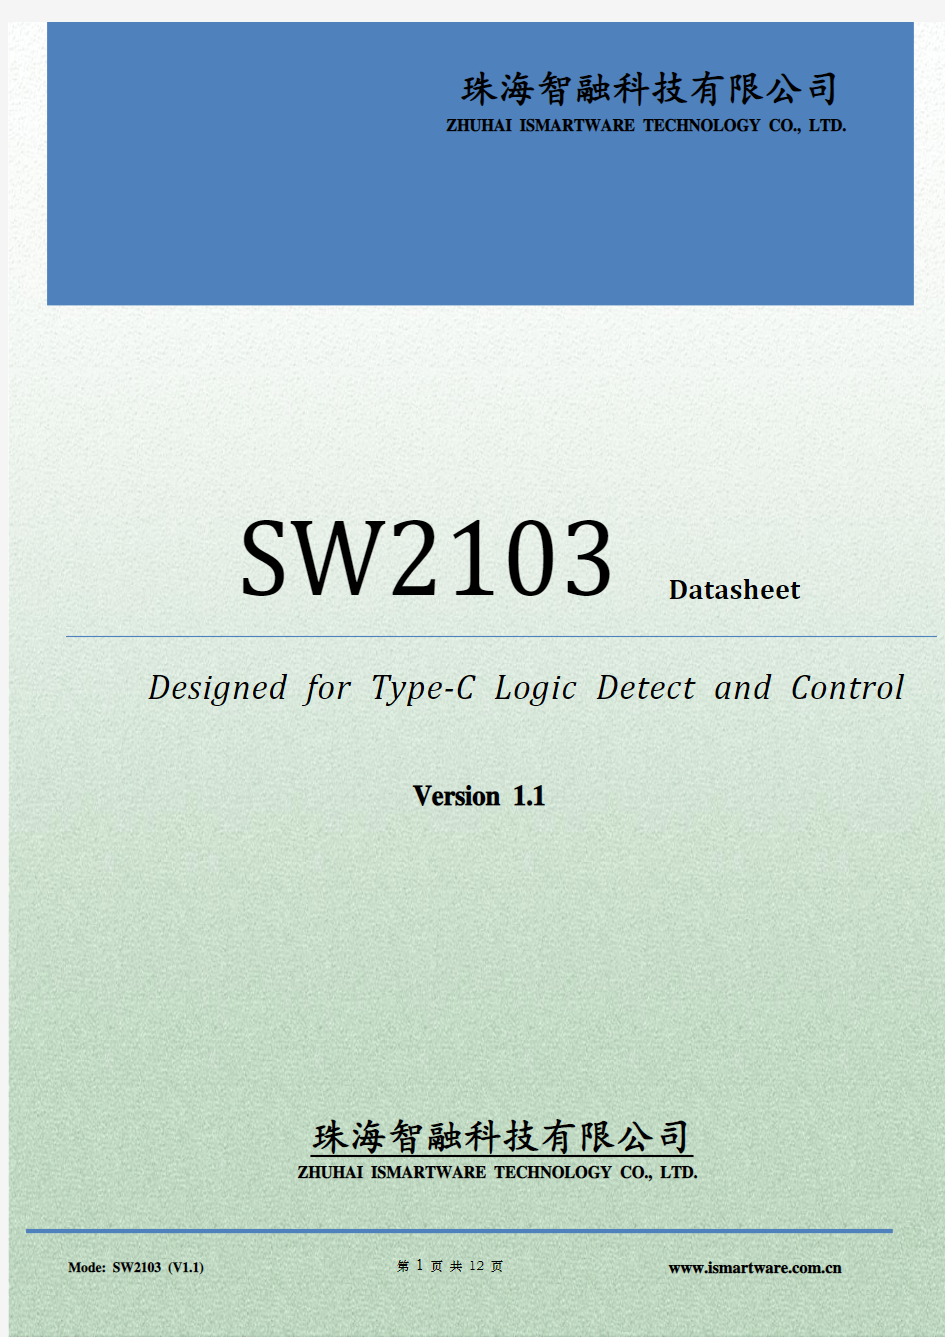 SW2103_Datasheet_v1.1_release